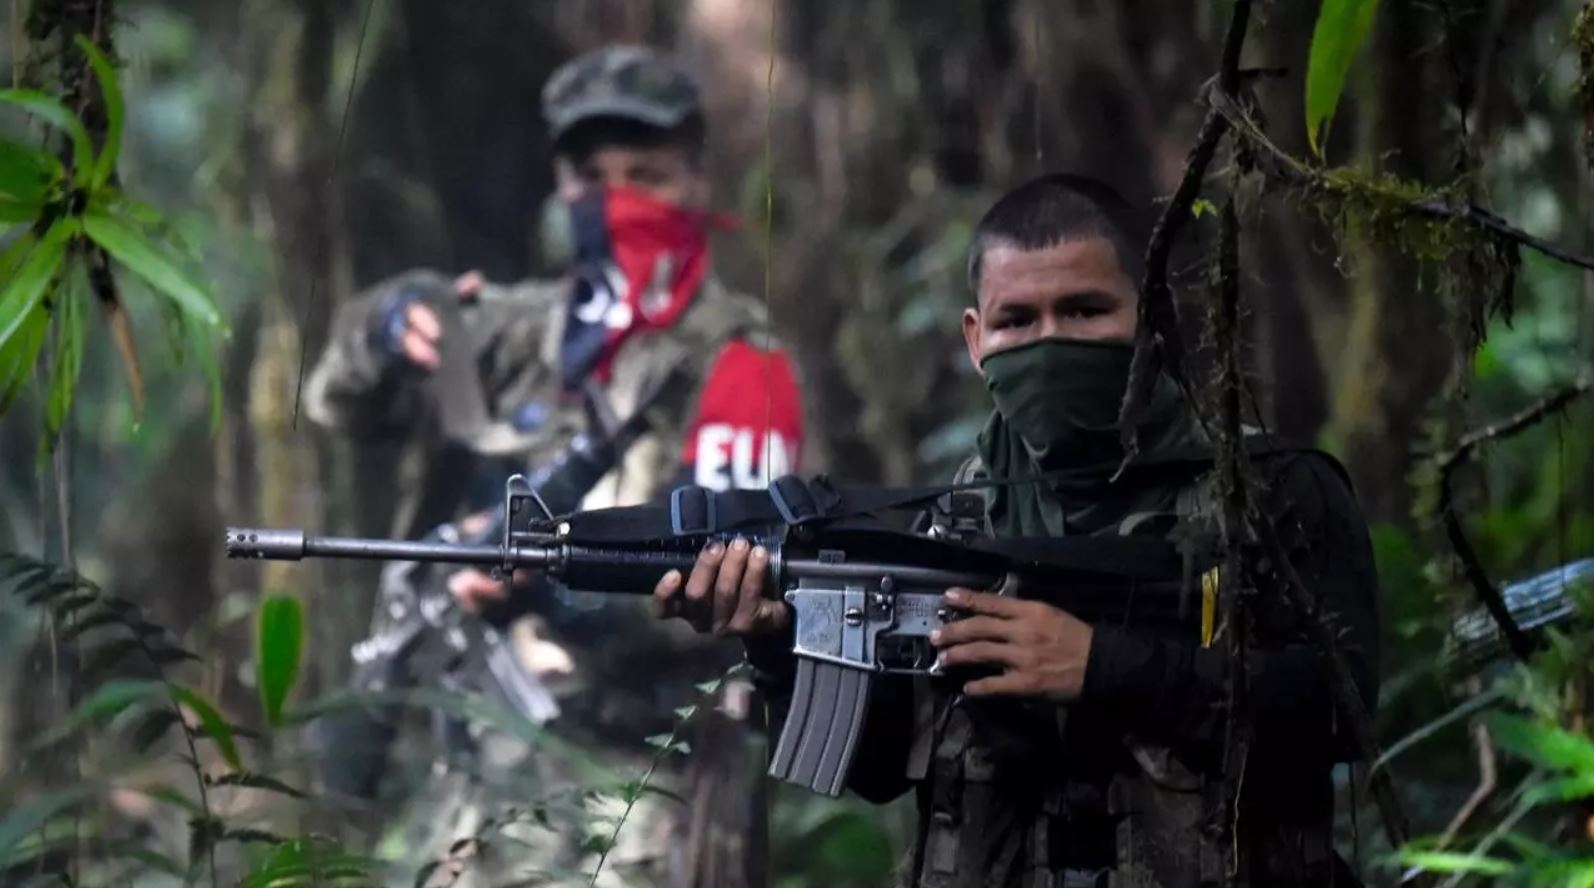 Soldados venezolanos que murieron en la frontera fueron enviados por Maduro a apoyar al ELN en su guerra contra ex guerrilleros de las FARC